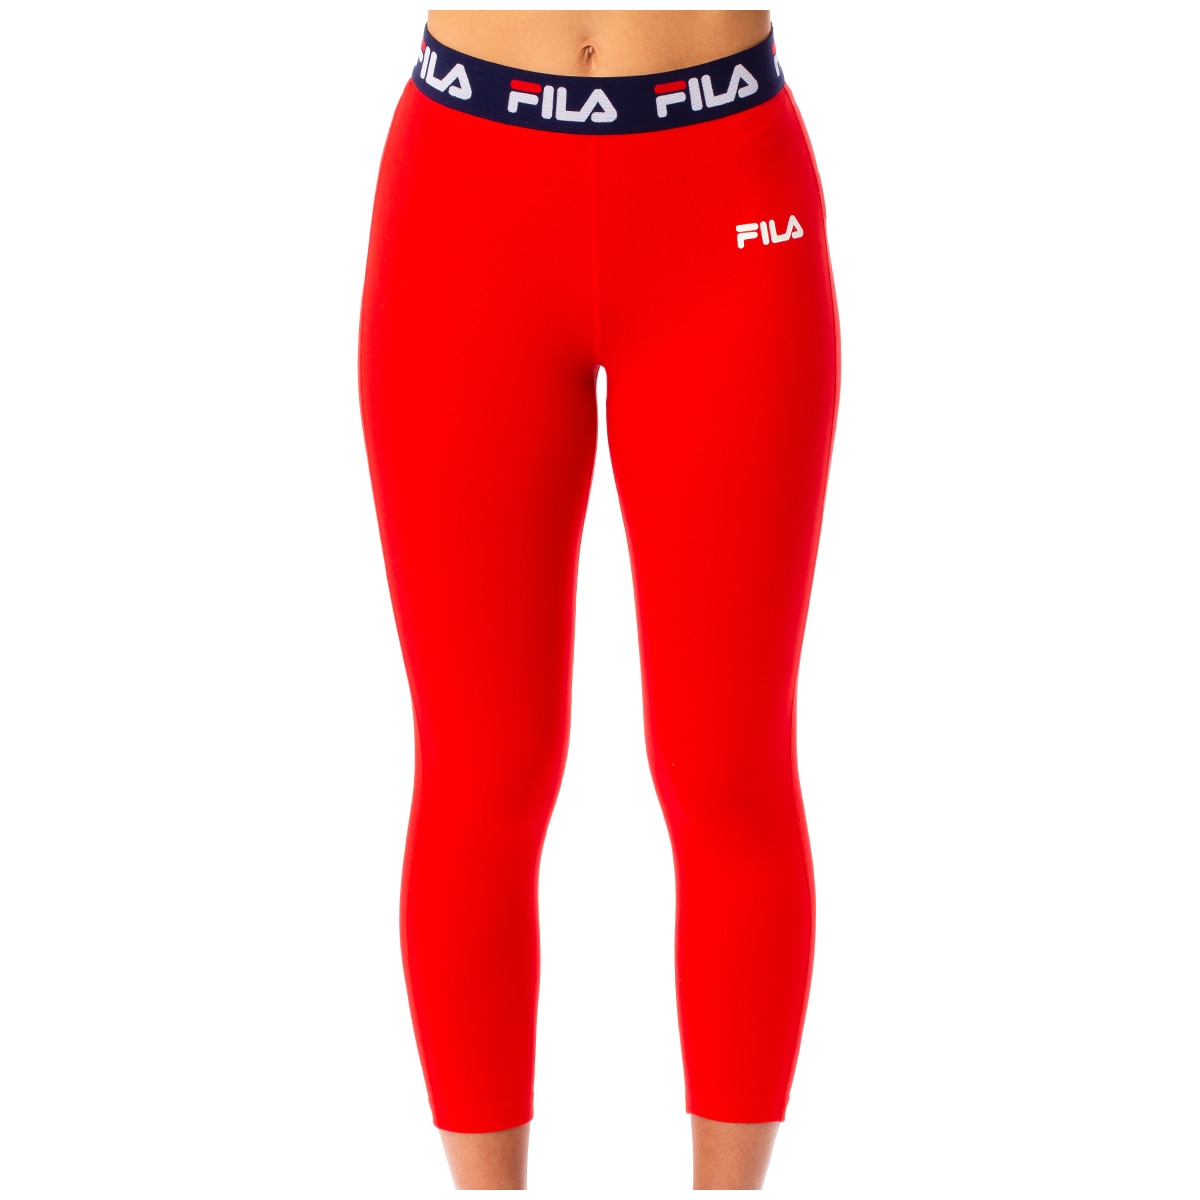 Fila Women's Tight (Katana) - Red